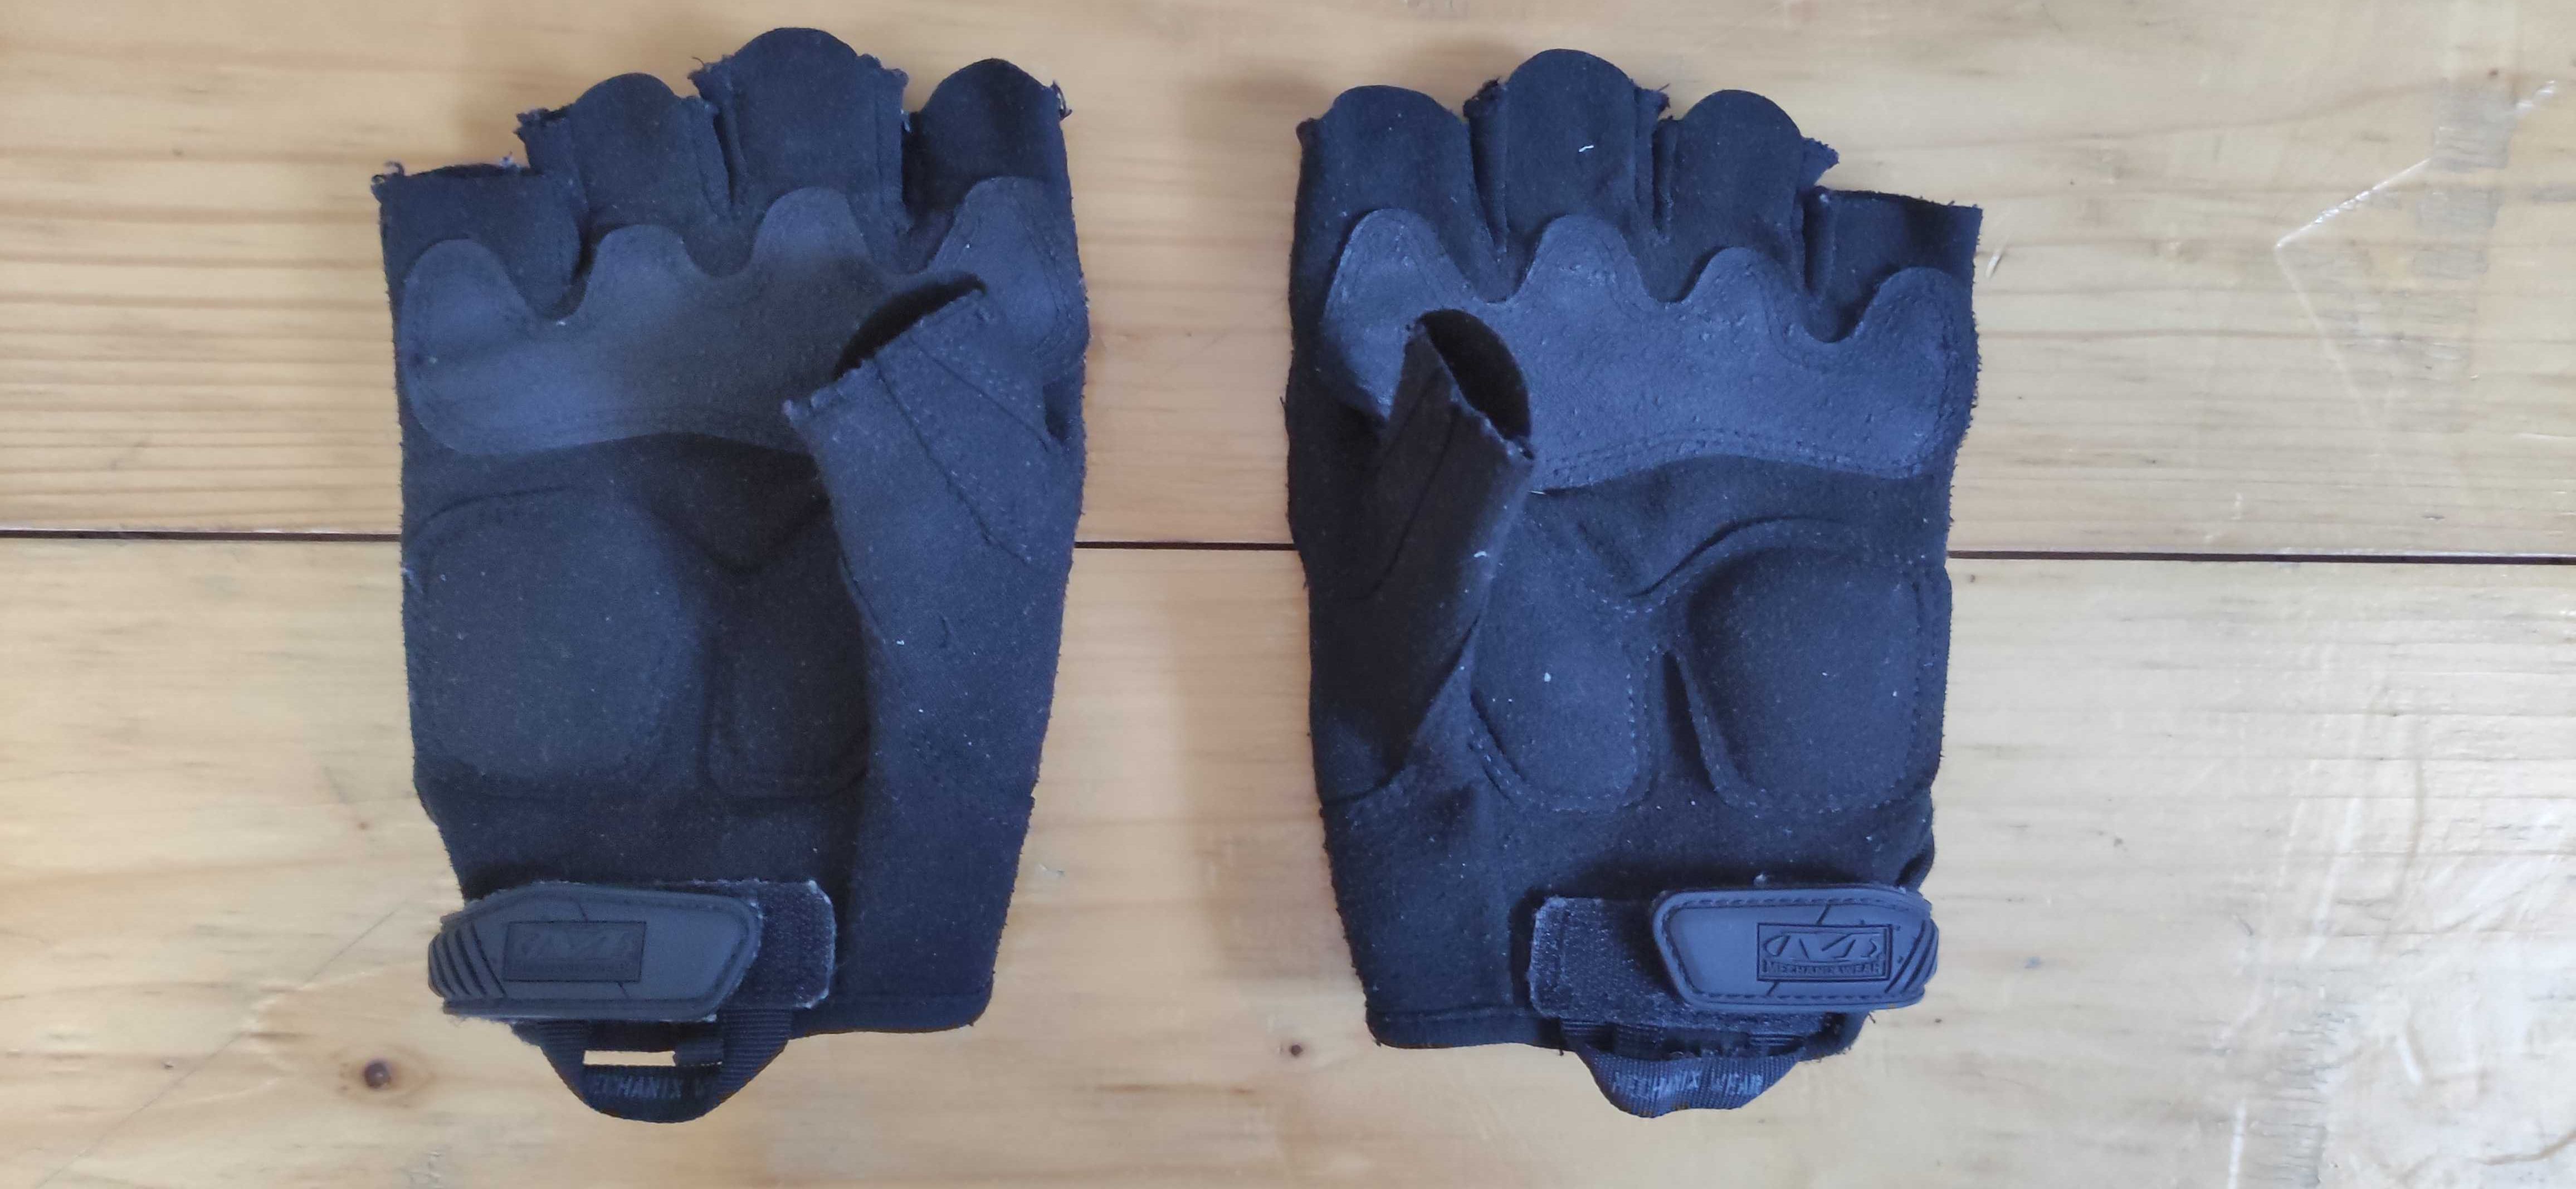 Rękawiczki Mechanix bez palców  - małe zużycie, rozmiar L